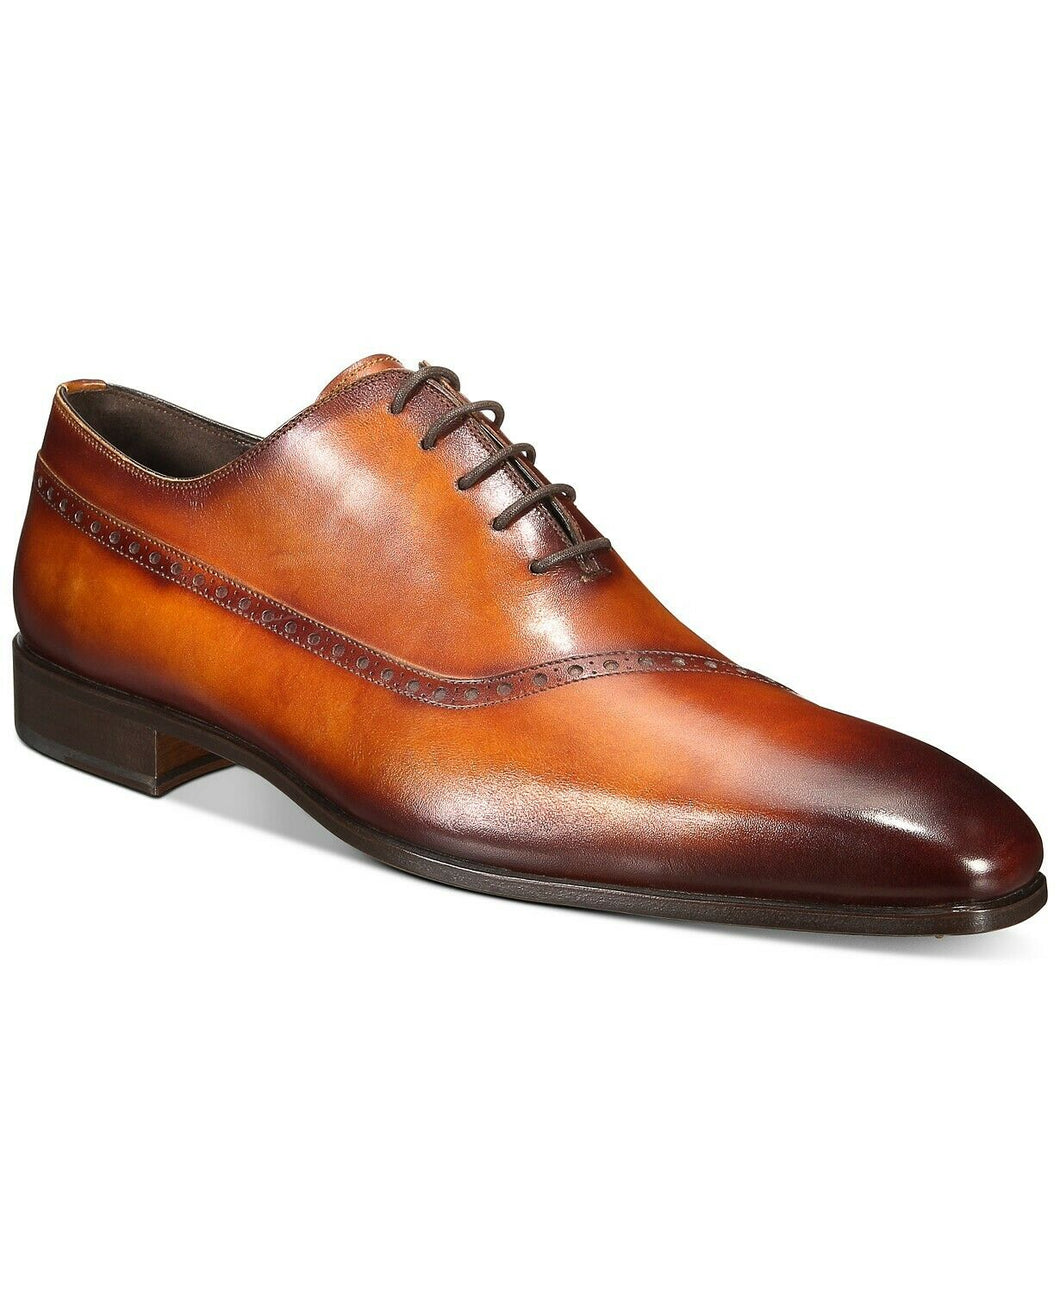 Massimo Emporio Men's Oblique Whole Cut Oxfords Business Fashion Dress Shoes Size 13